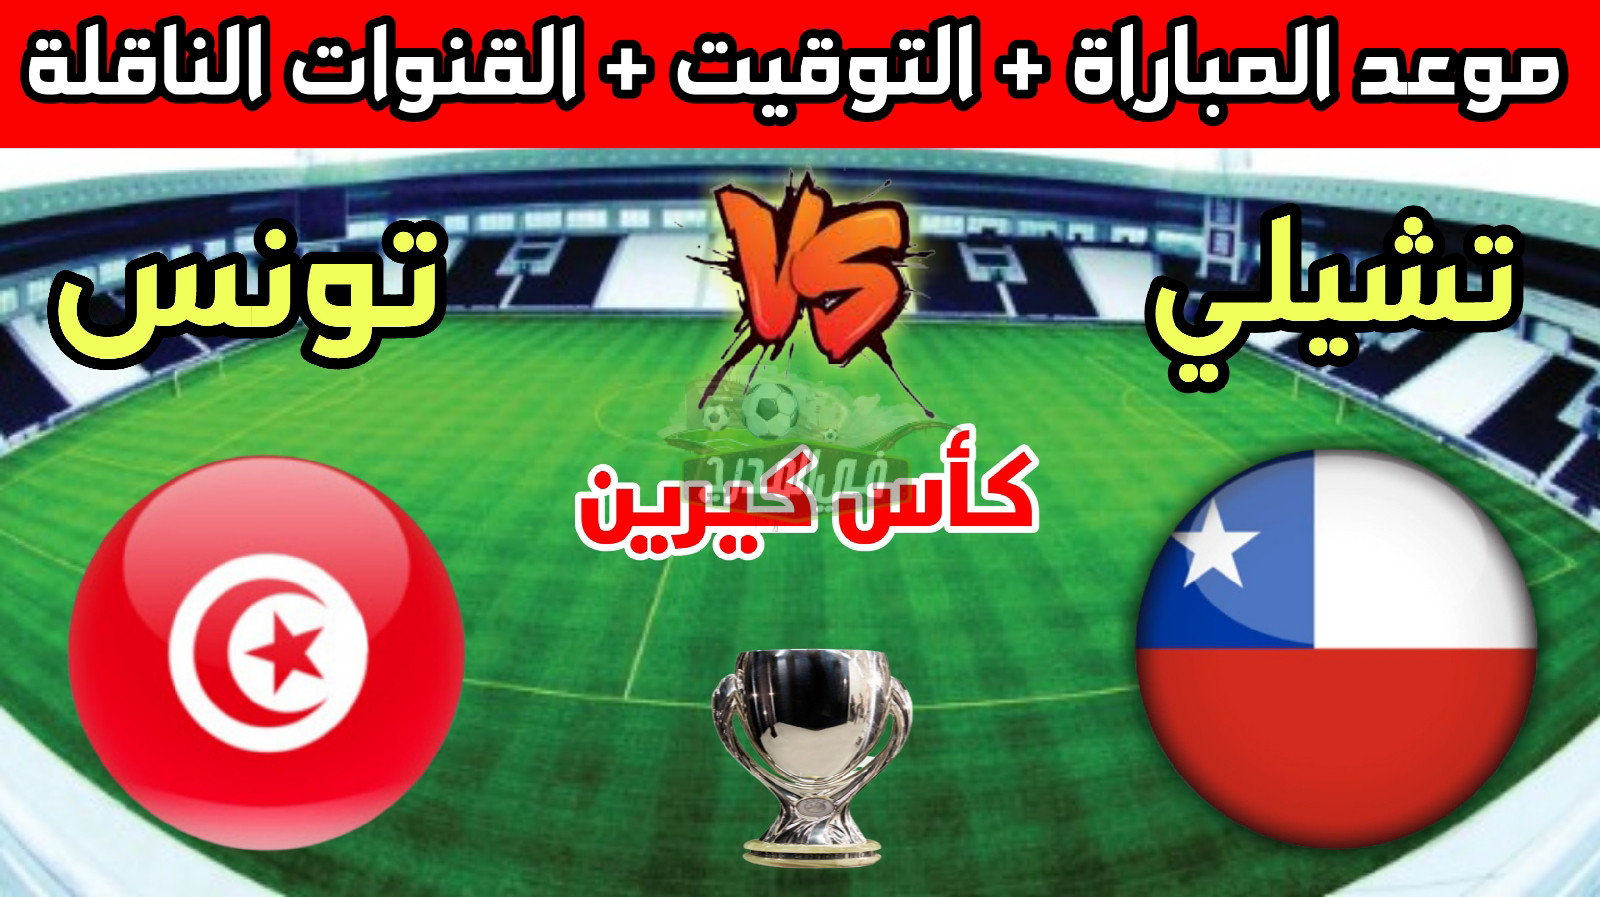 موعد مباراة تونس وتشيلي الودية في كأس كيرين 2022 والقنوات الناقلة لها